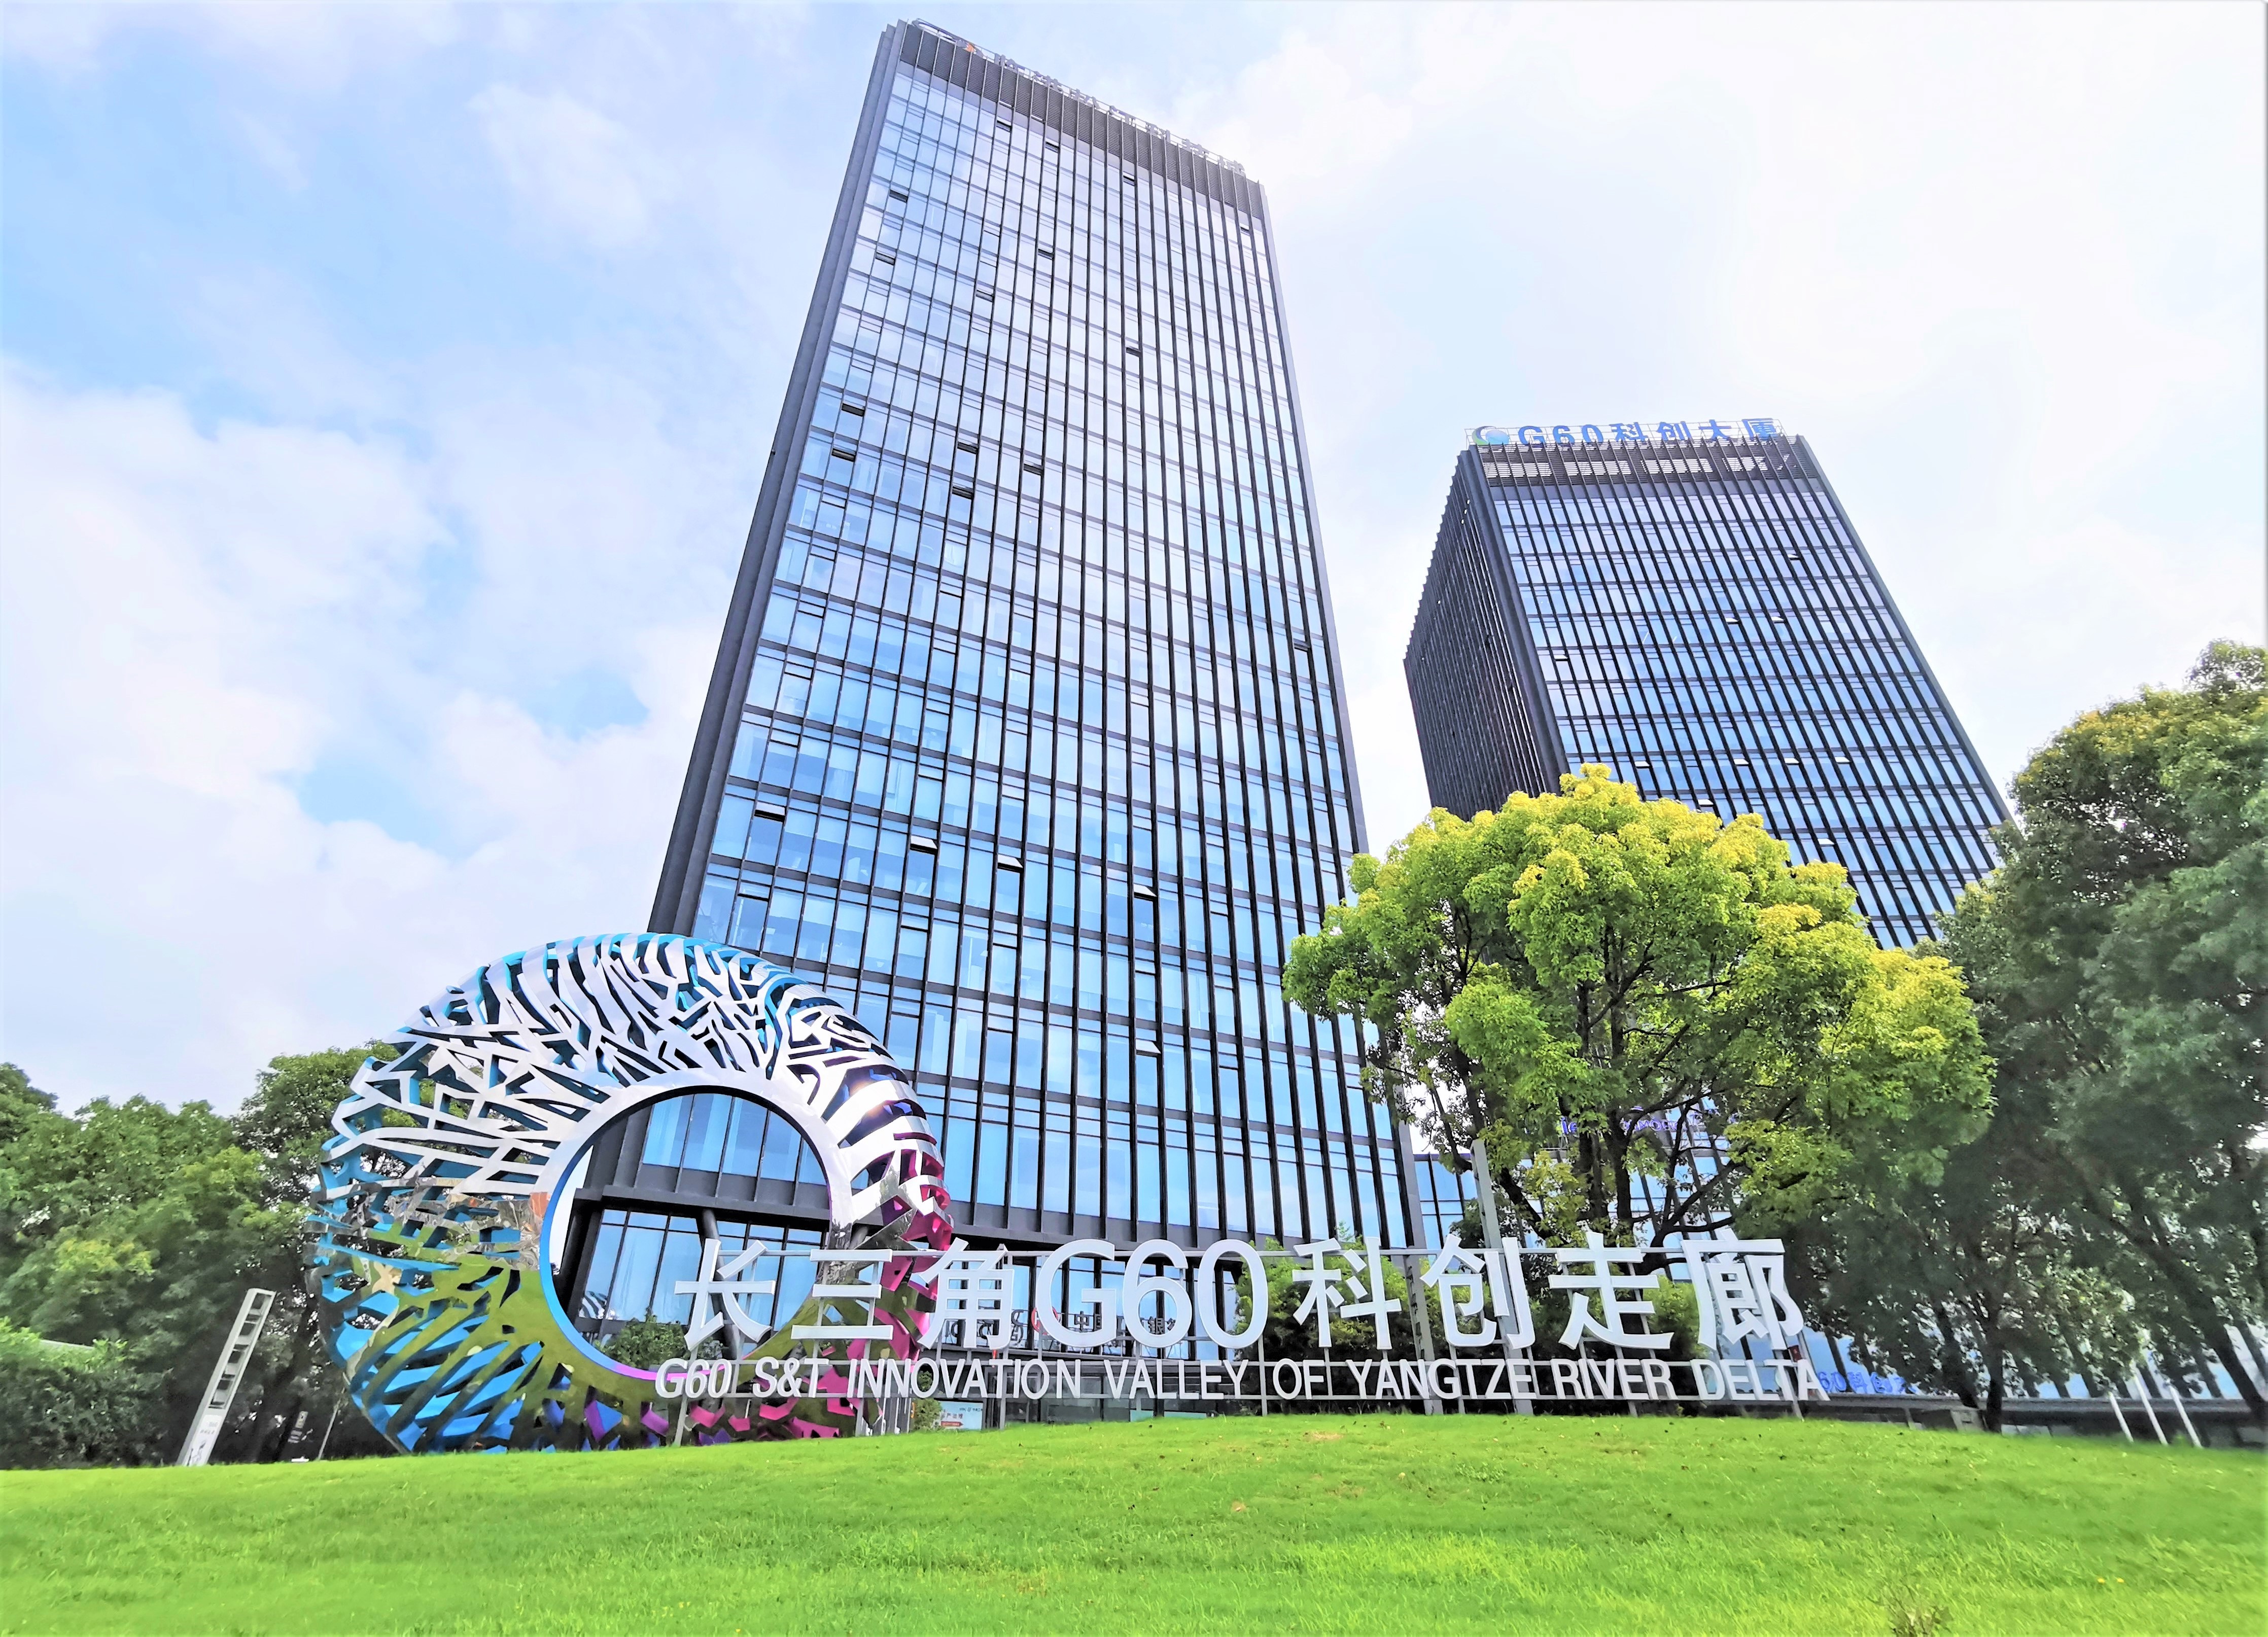 松江g60科创走廊数字经济创新型产业集群跻身国家试点(培育)名单